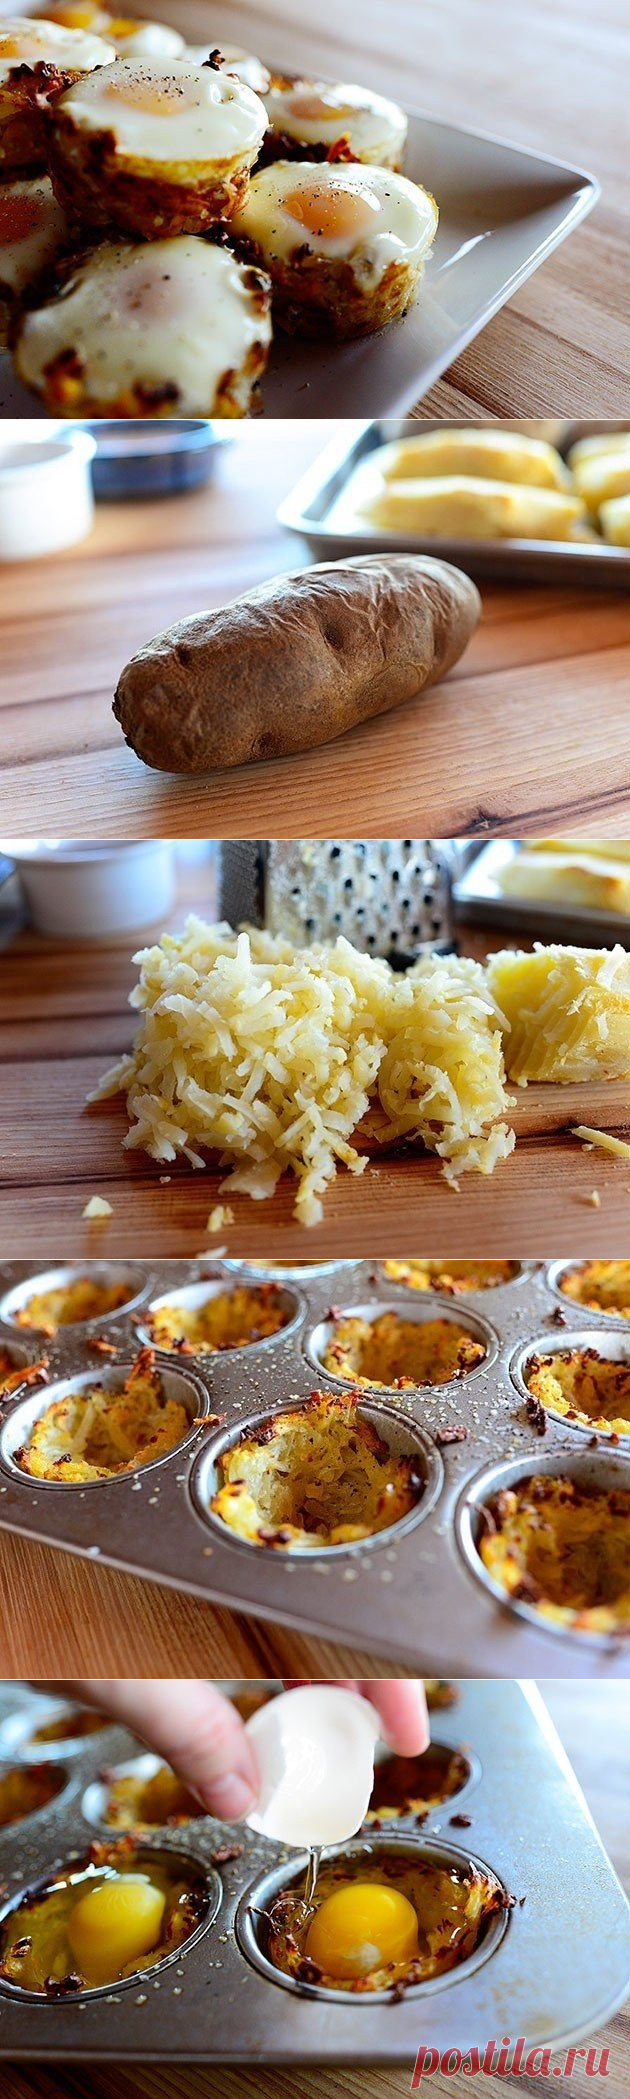 Как приготовить яичницы-глазуньи в картофельных корзиночках - рецепт, ингредиенты и фотографии